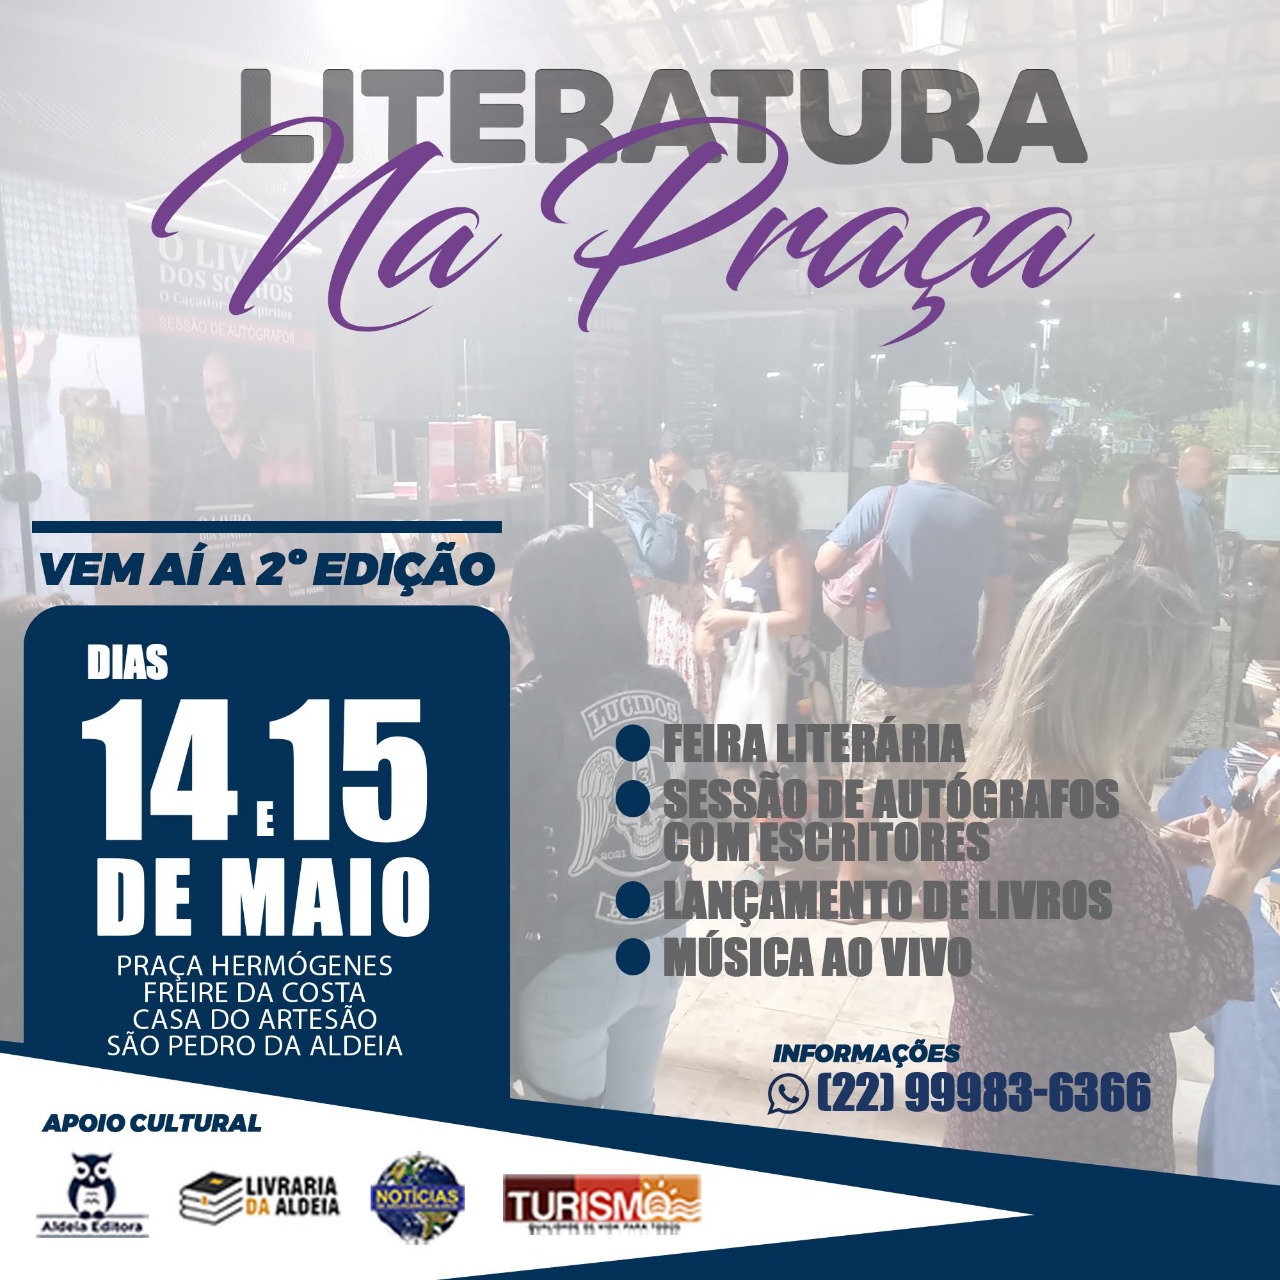 Vem aí a 2ª edição do Projeto Literatura na Praça em São Pedro da Aldeia